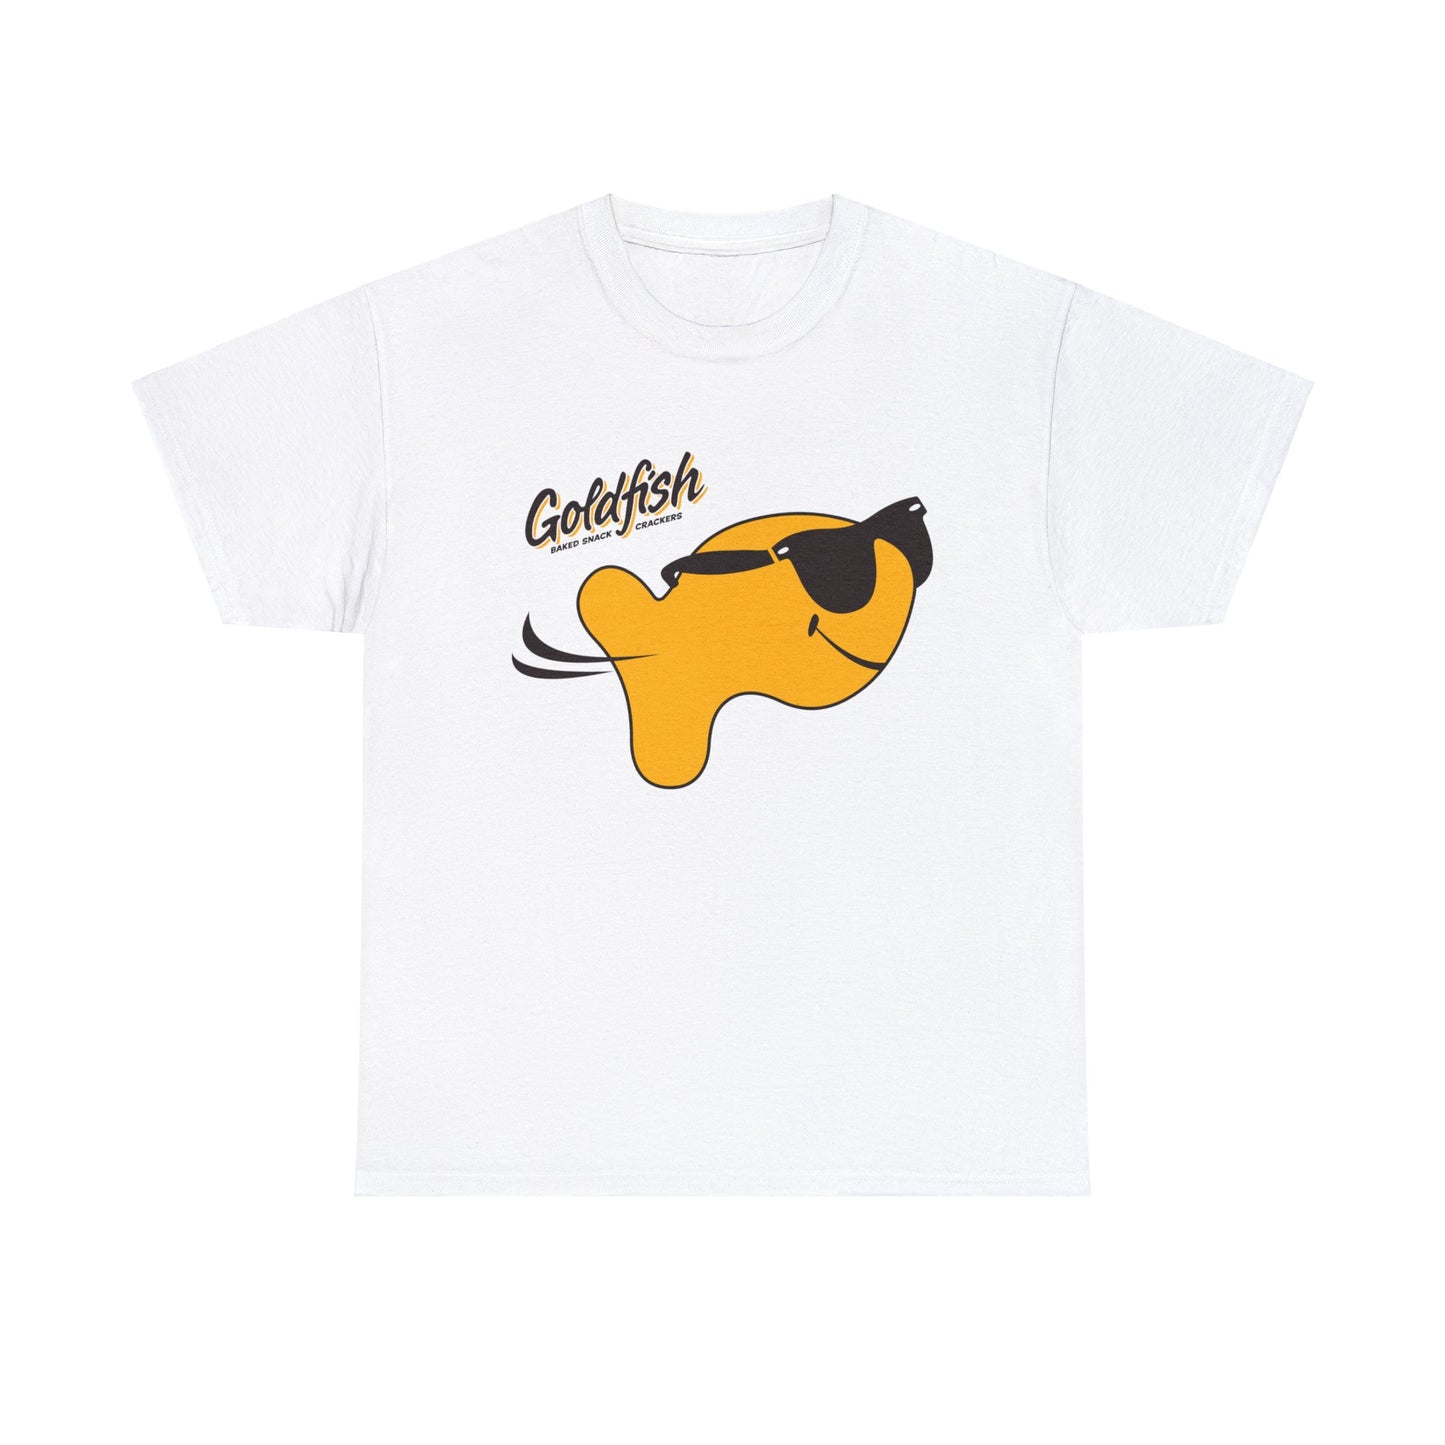 Goldfish Snack Cracker T-shirt for Sale